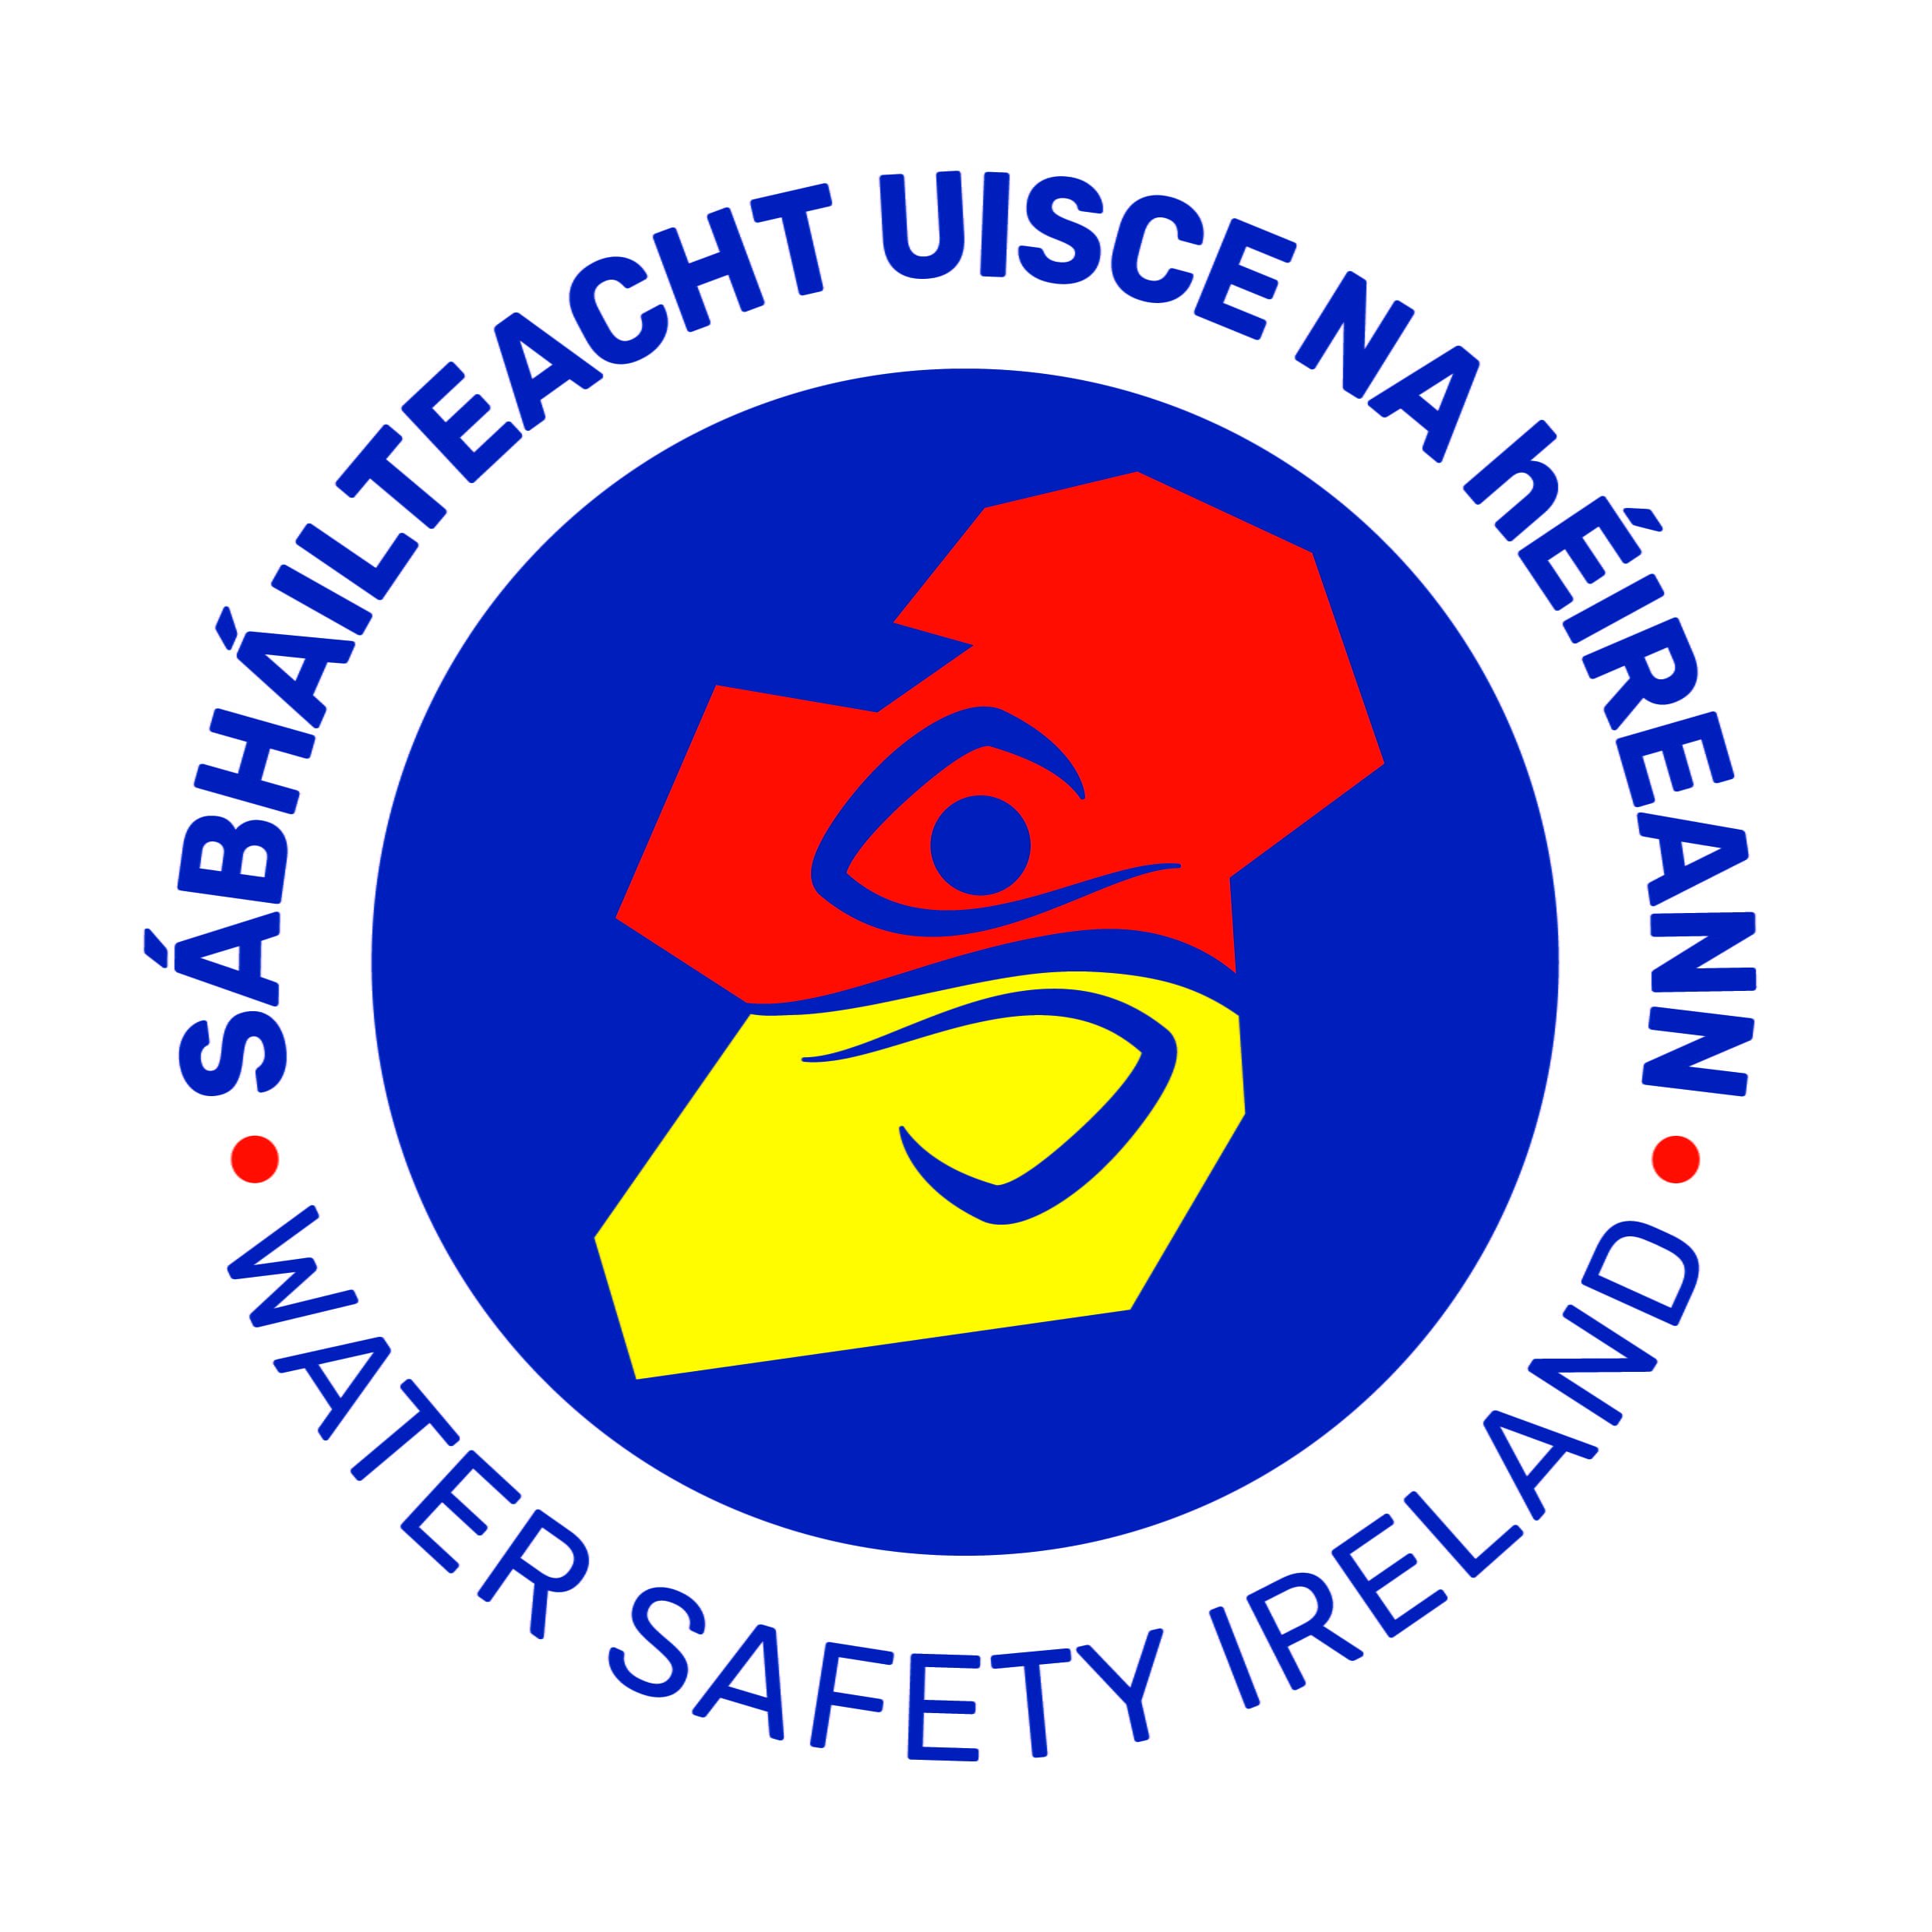 water-safety-ireland-logo-jpg.jpg